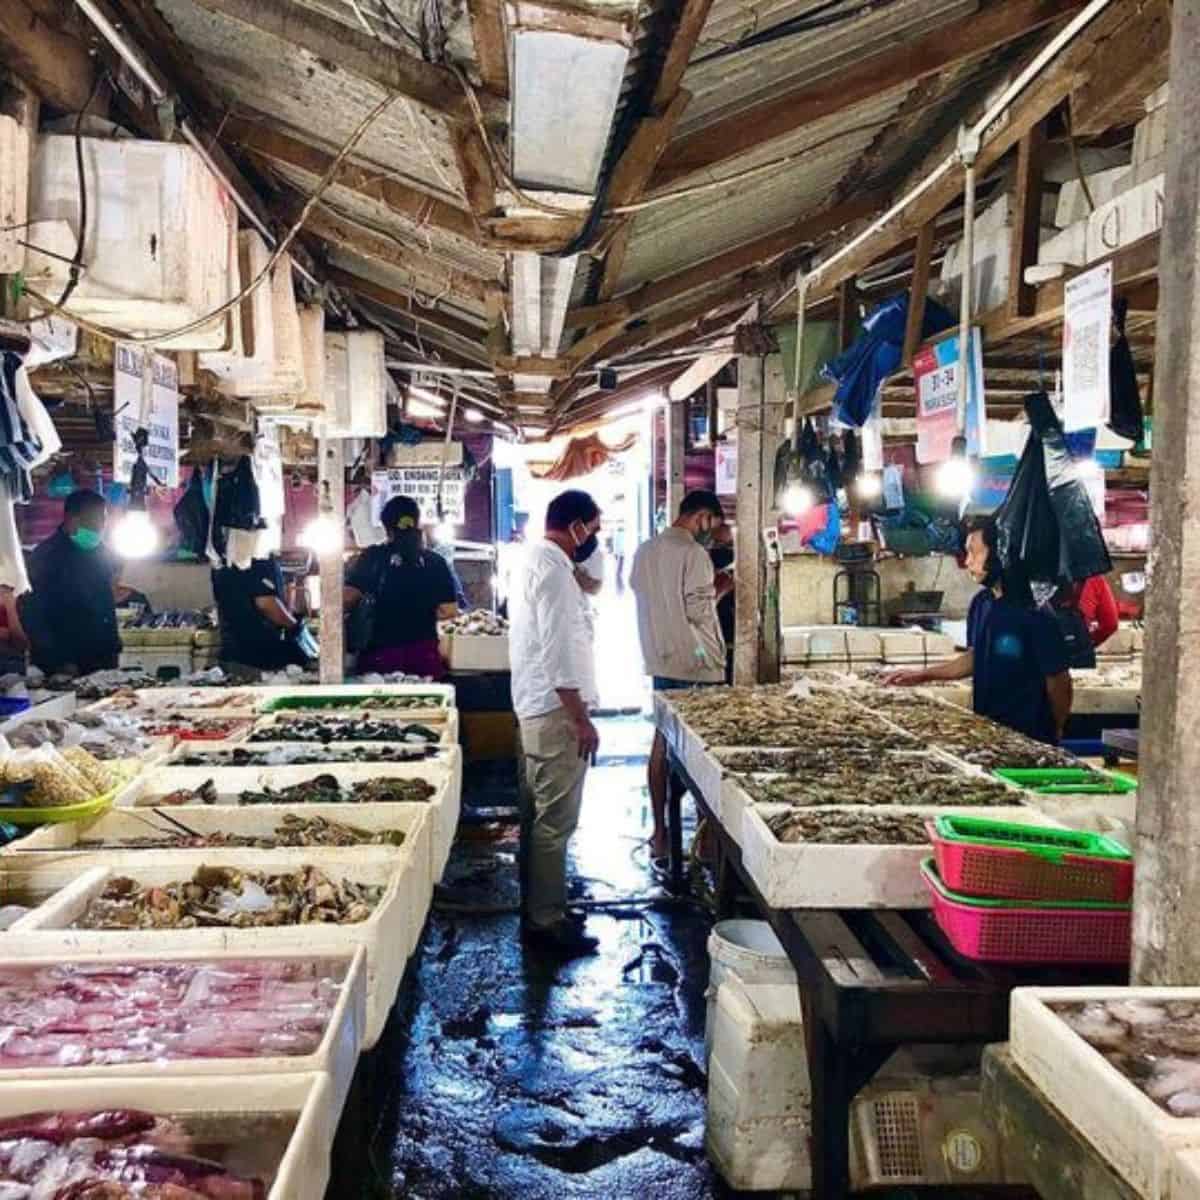 Kedonganan fish market stalls